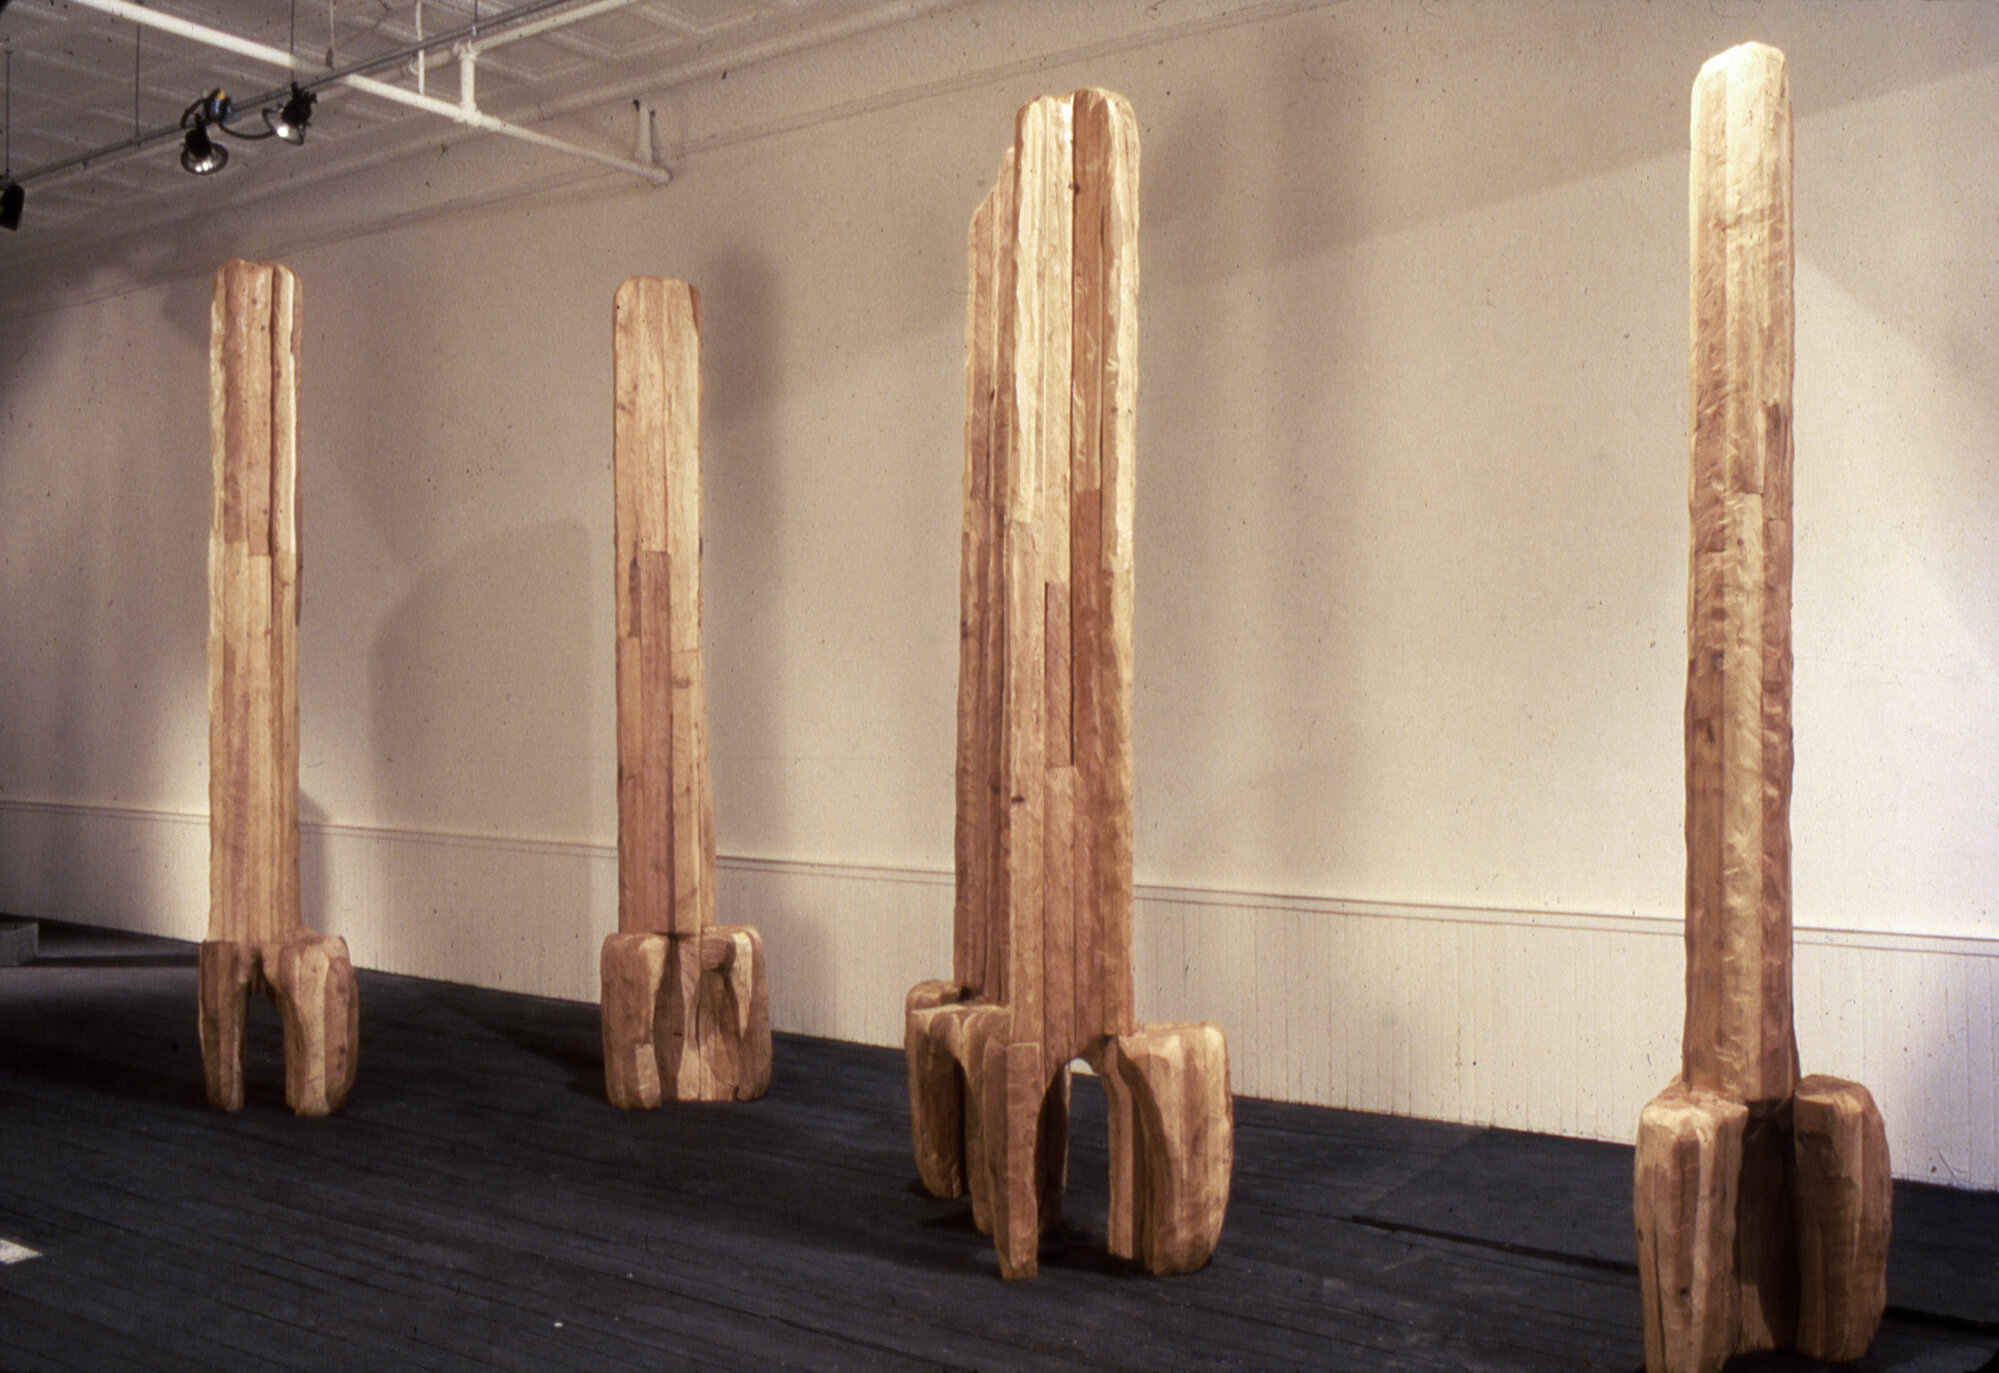       For Paul , 1983 Cedar 144 x 36 x 24 in.    Bette Stoler Gallery  